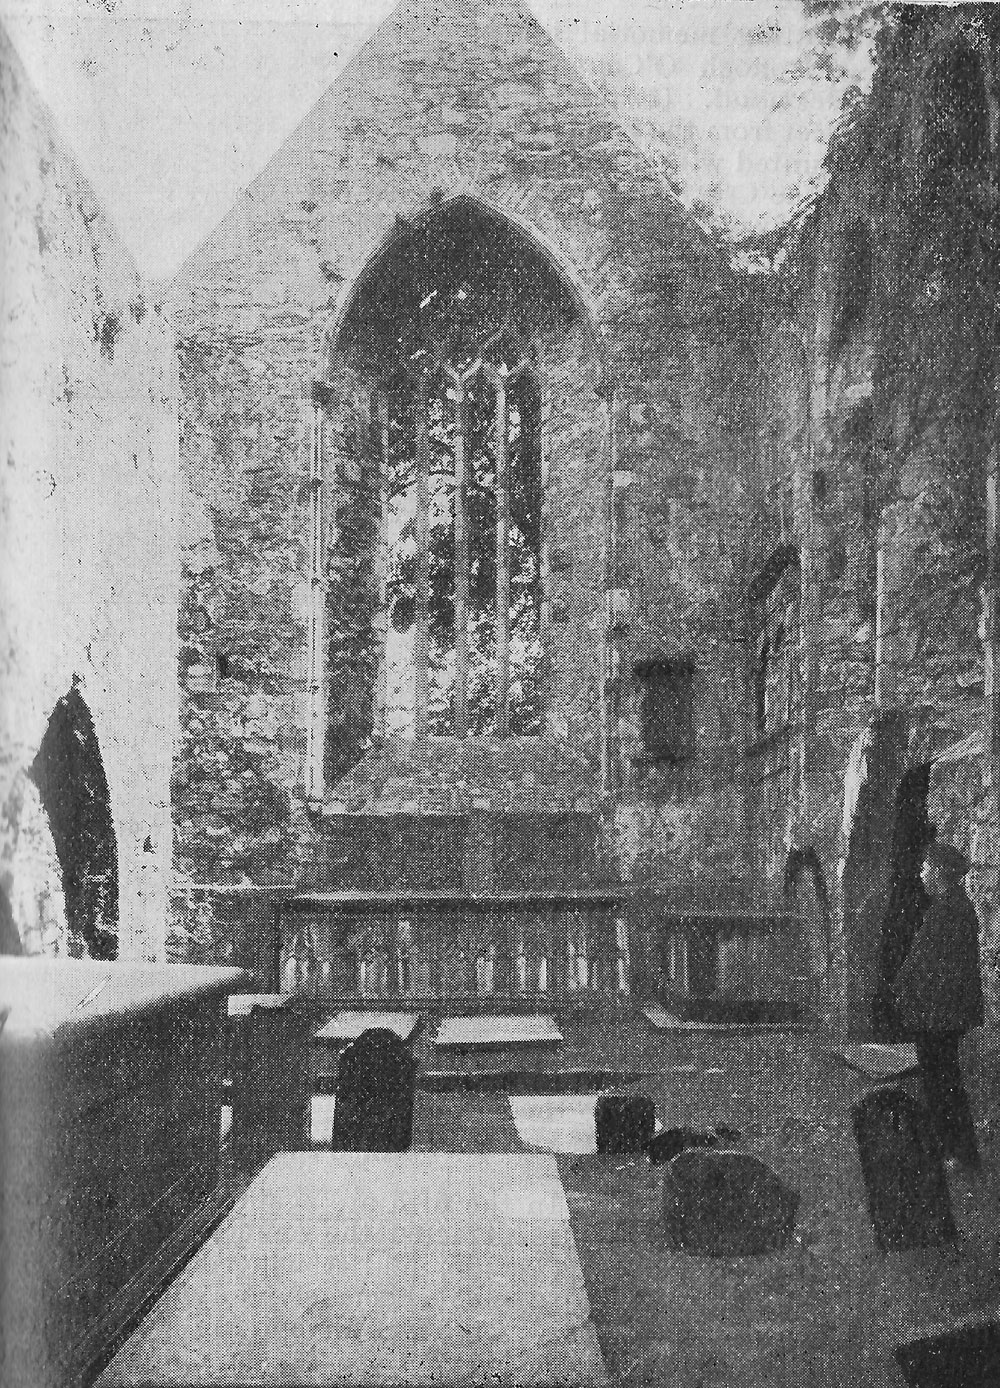 A photograph of the Nave and High Altar by the Sligo photographer Tadgh Kilgannon.